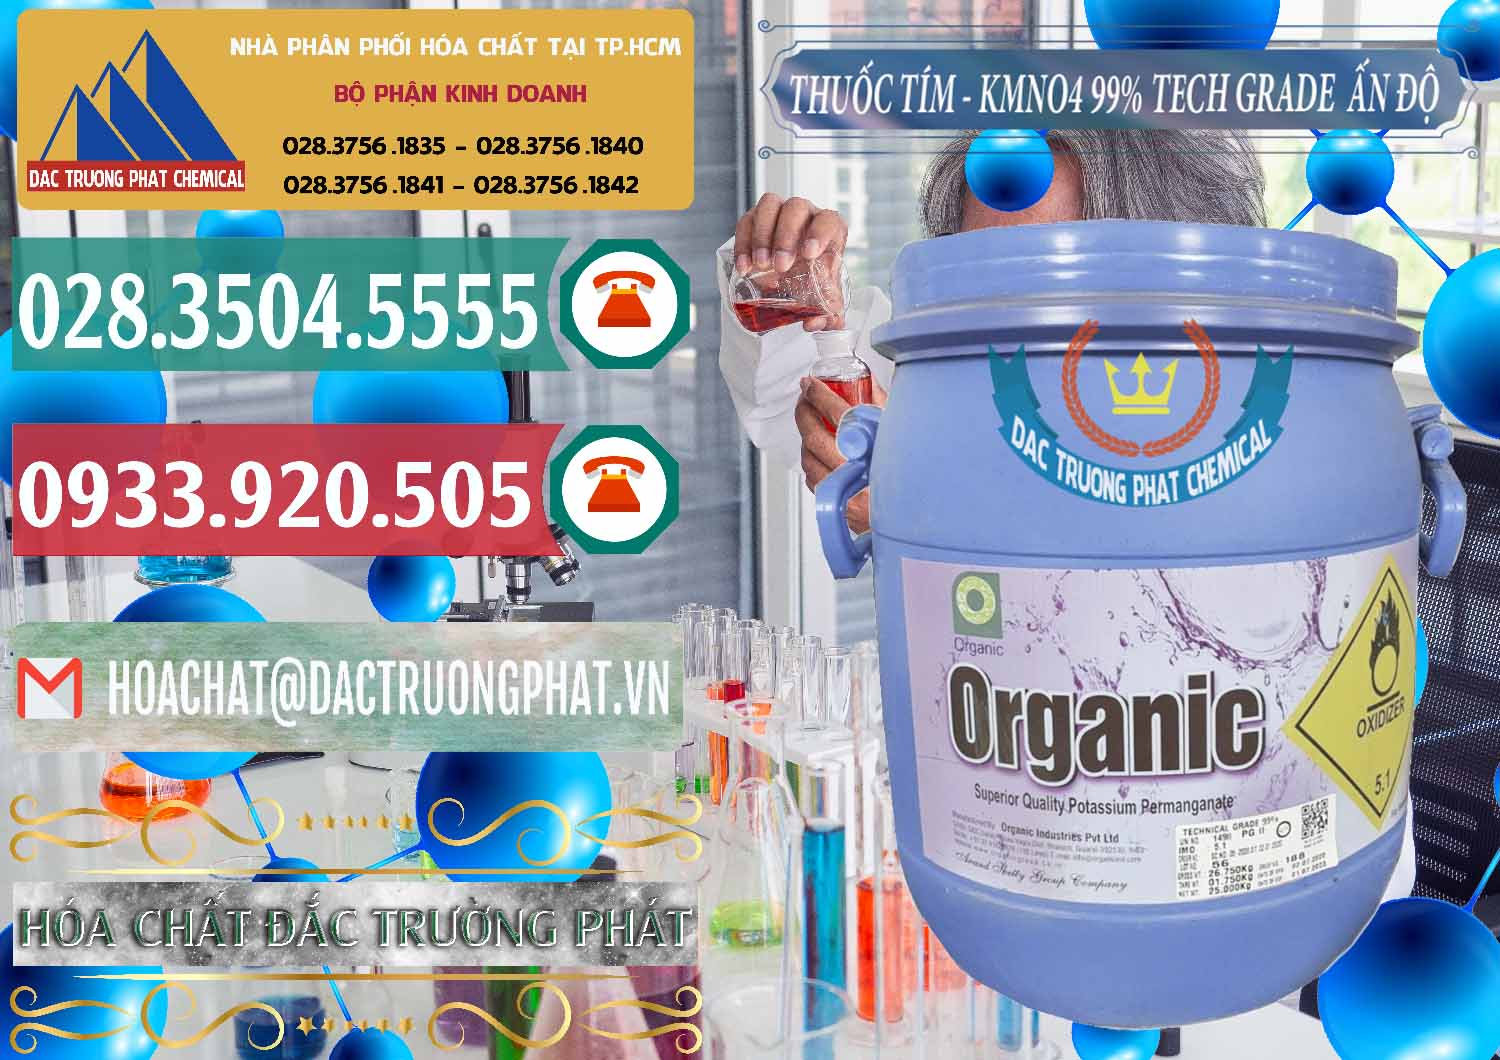 Nơi chuyên bán - cung cấp Thuốc Tím - KMNO4 99% Organic Group Ấn Độ India - 0250 - Cty chuyên phân phối và kinh doanh hóa chất tại TP.HCM - muabanhoachat.vn